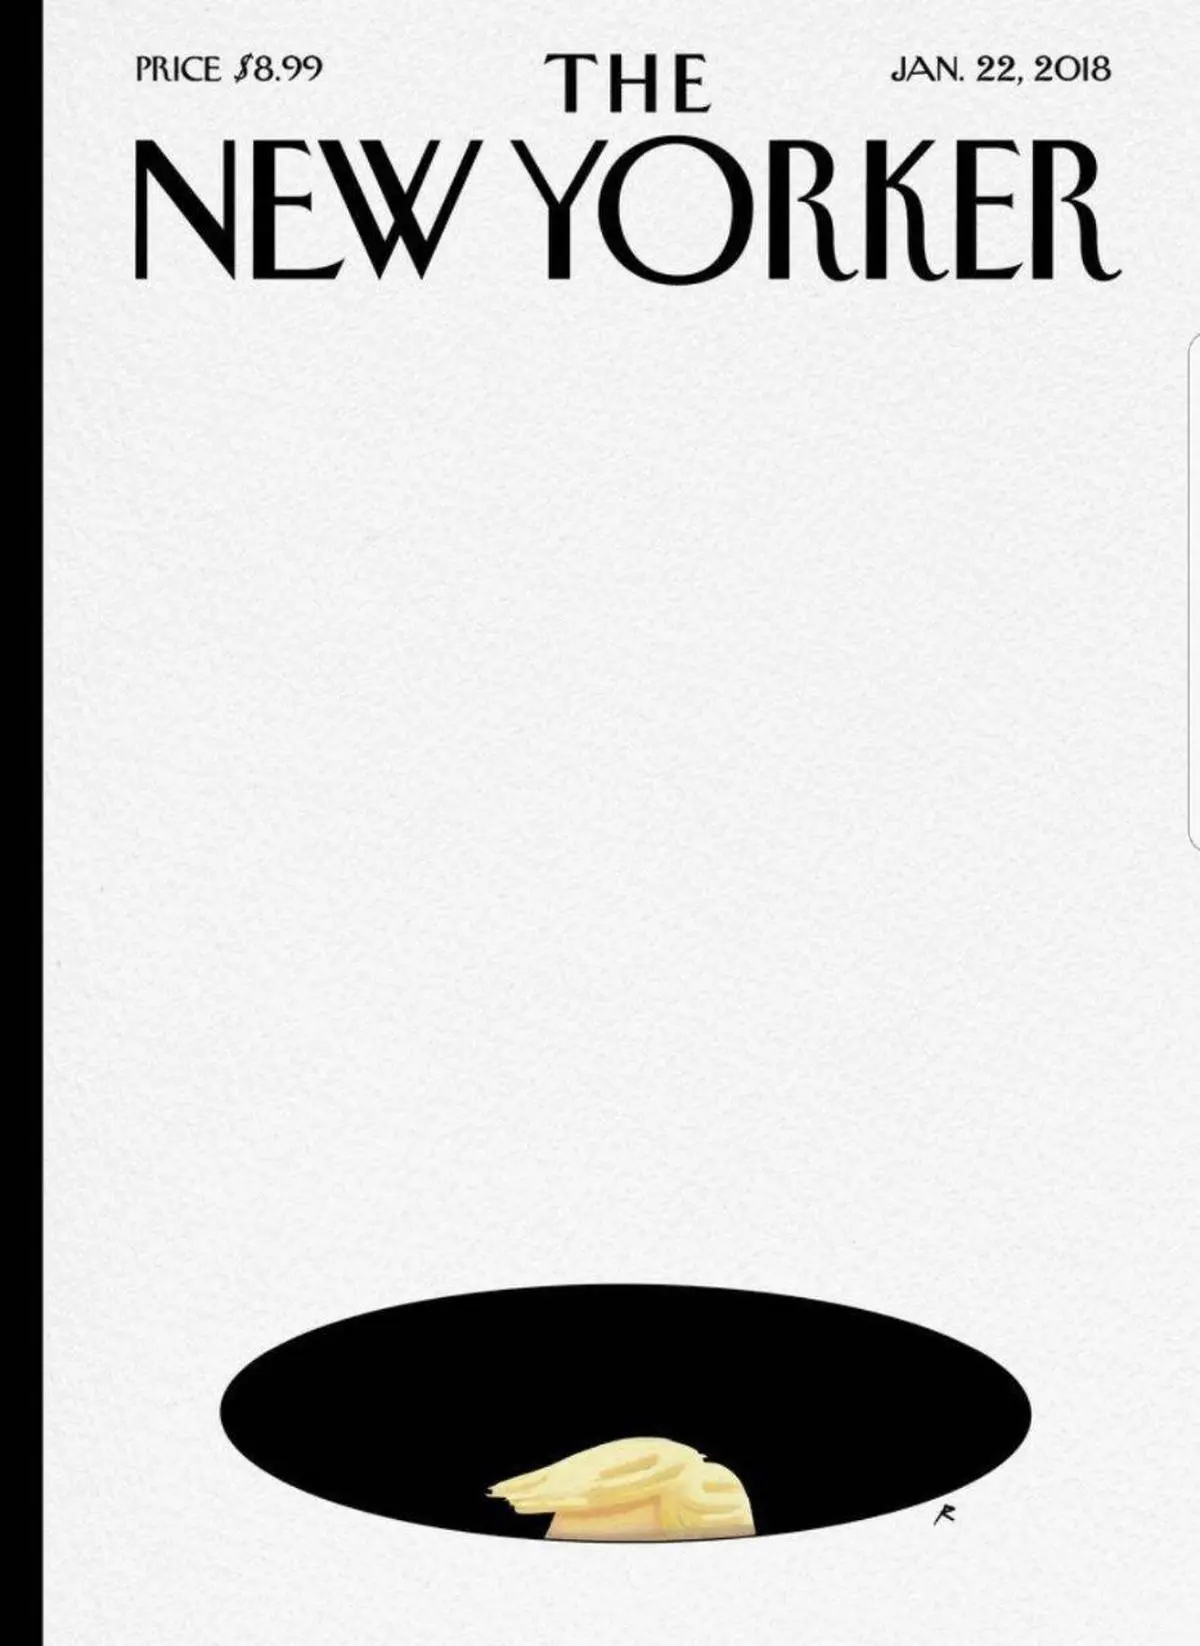 طرح جلد مجله نیویورکر در واکنش به توهین اخیر ترامپ